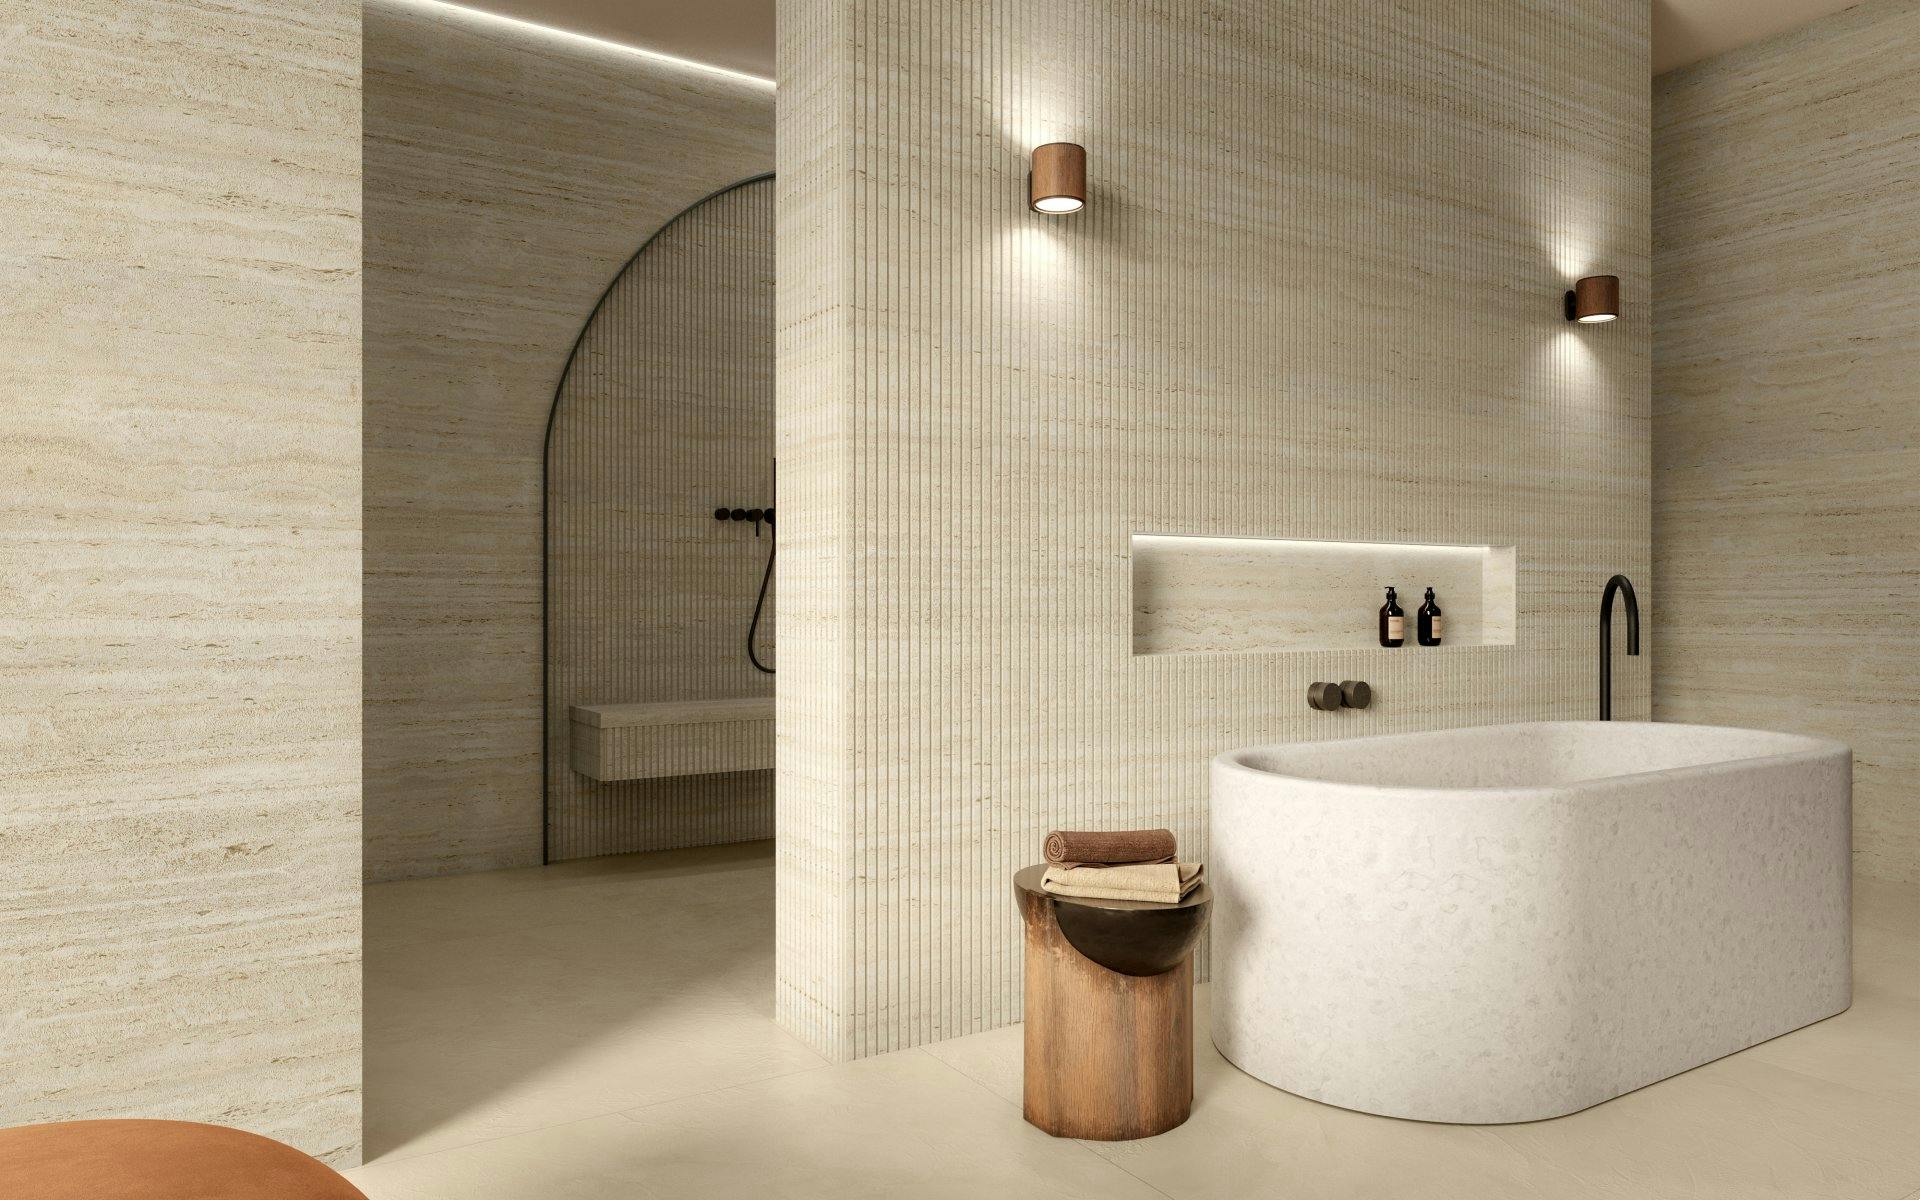 Remodelação de Casa de Banho – 3 Passos Essenciais - Showroom Sanitop